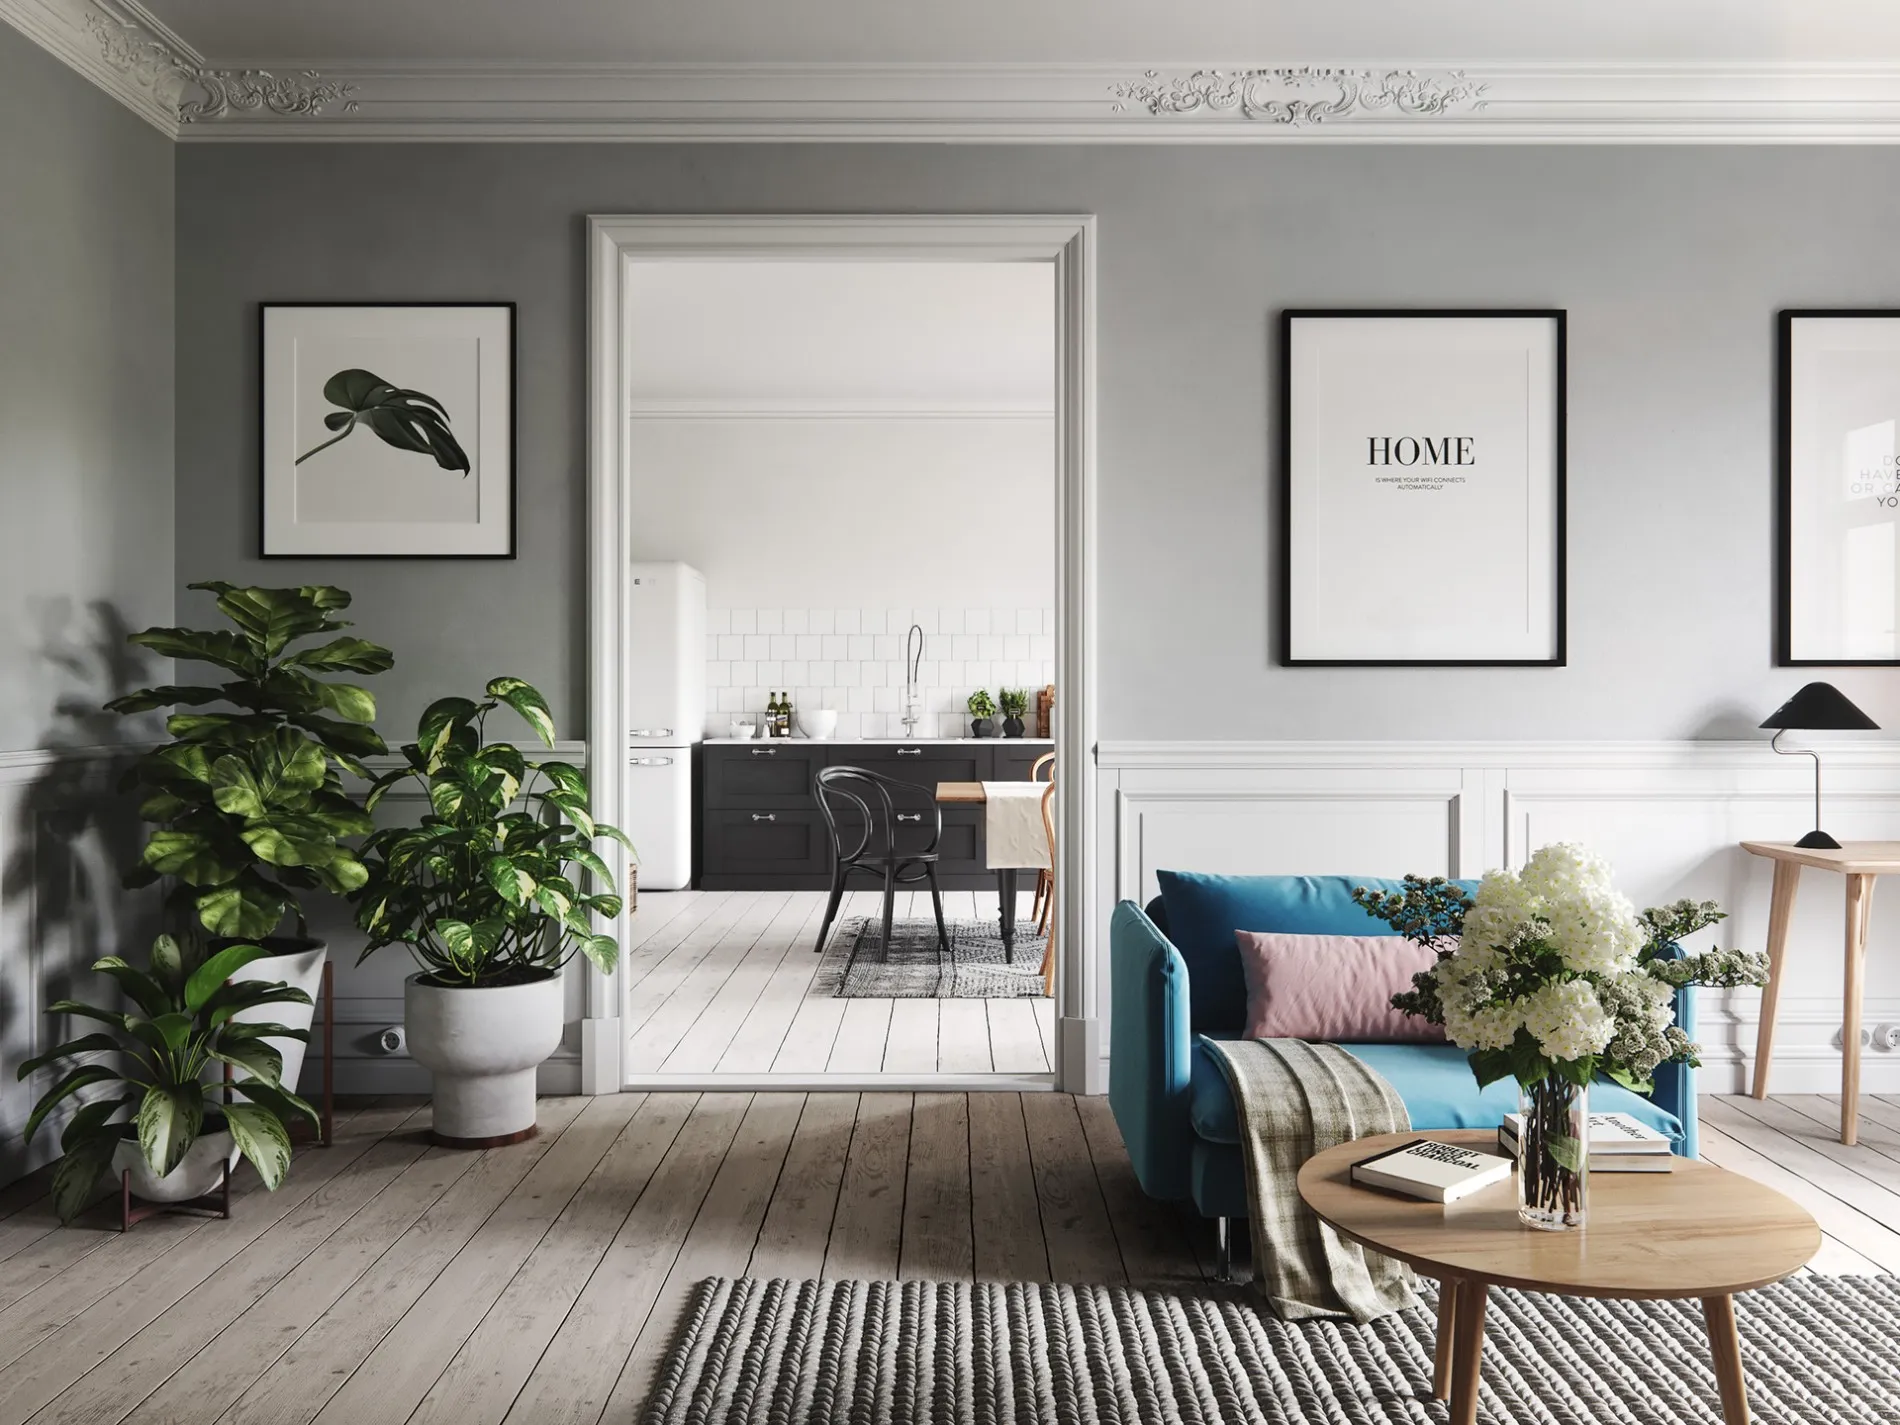 Thiết kế nội thất Scandinavian – cảm hứng từ xứ sở tuyết trắng